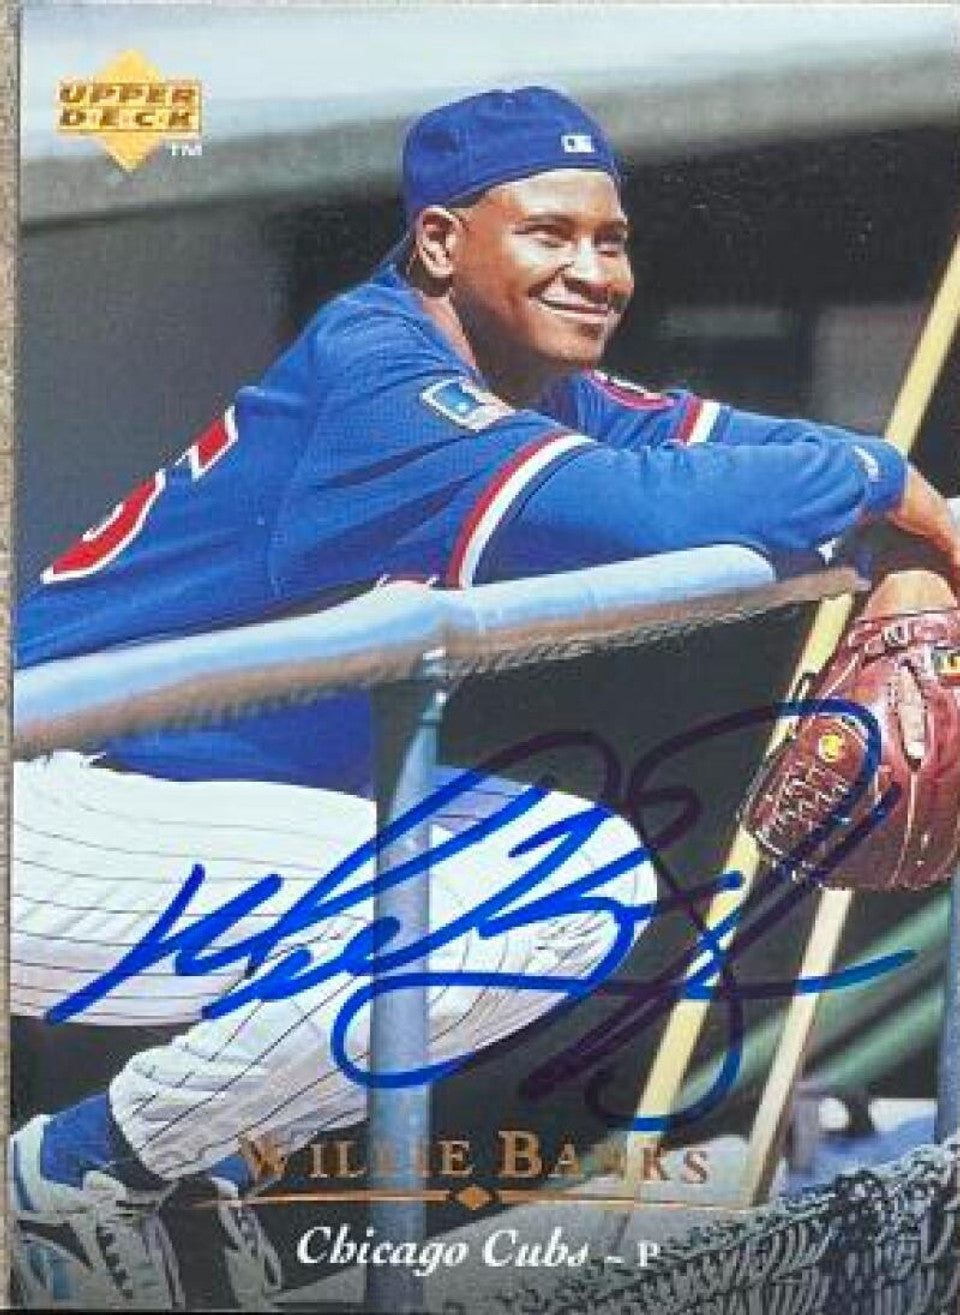 ウィリー・バンクス サイン入り 1995 アッパーデッキ ベースボールカード - シカゴ・カブス